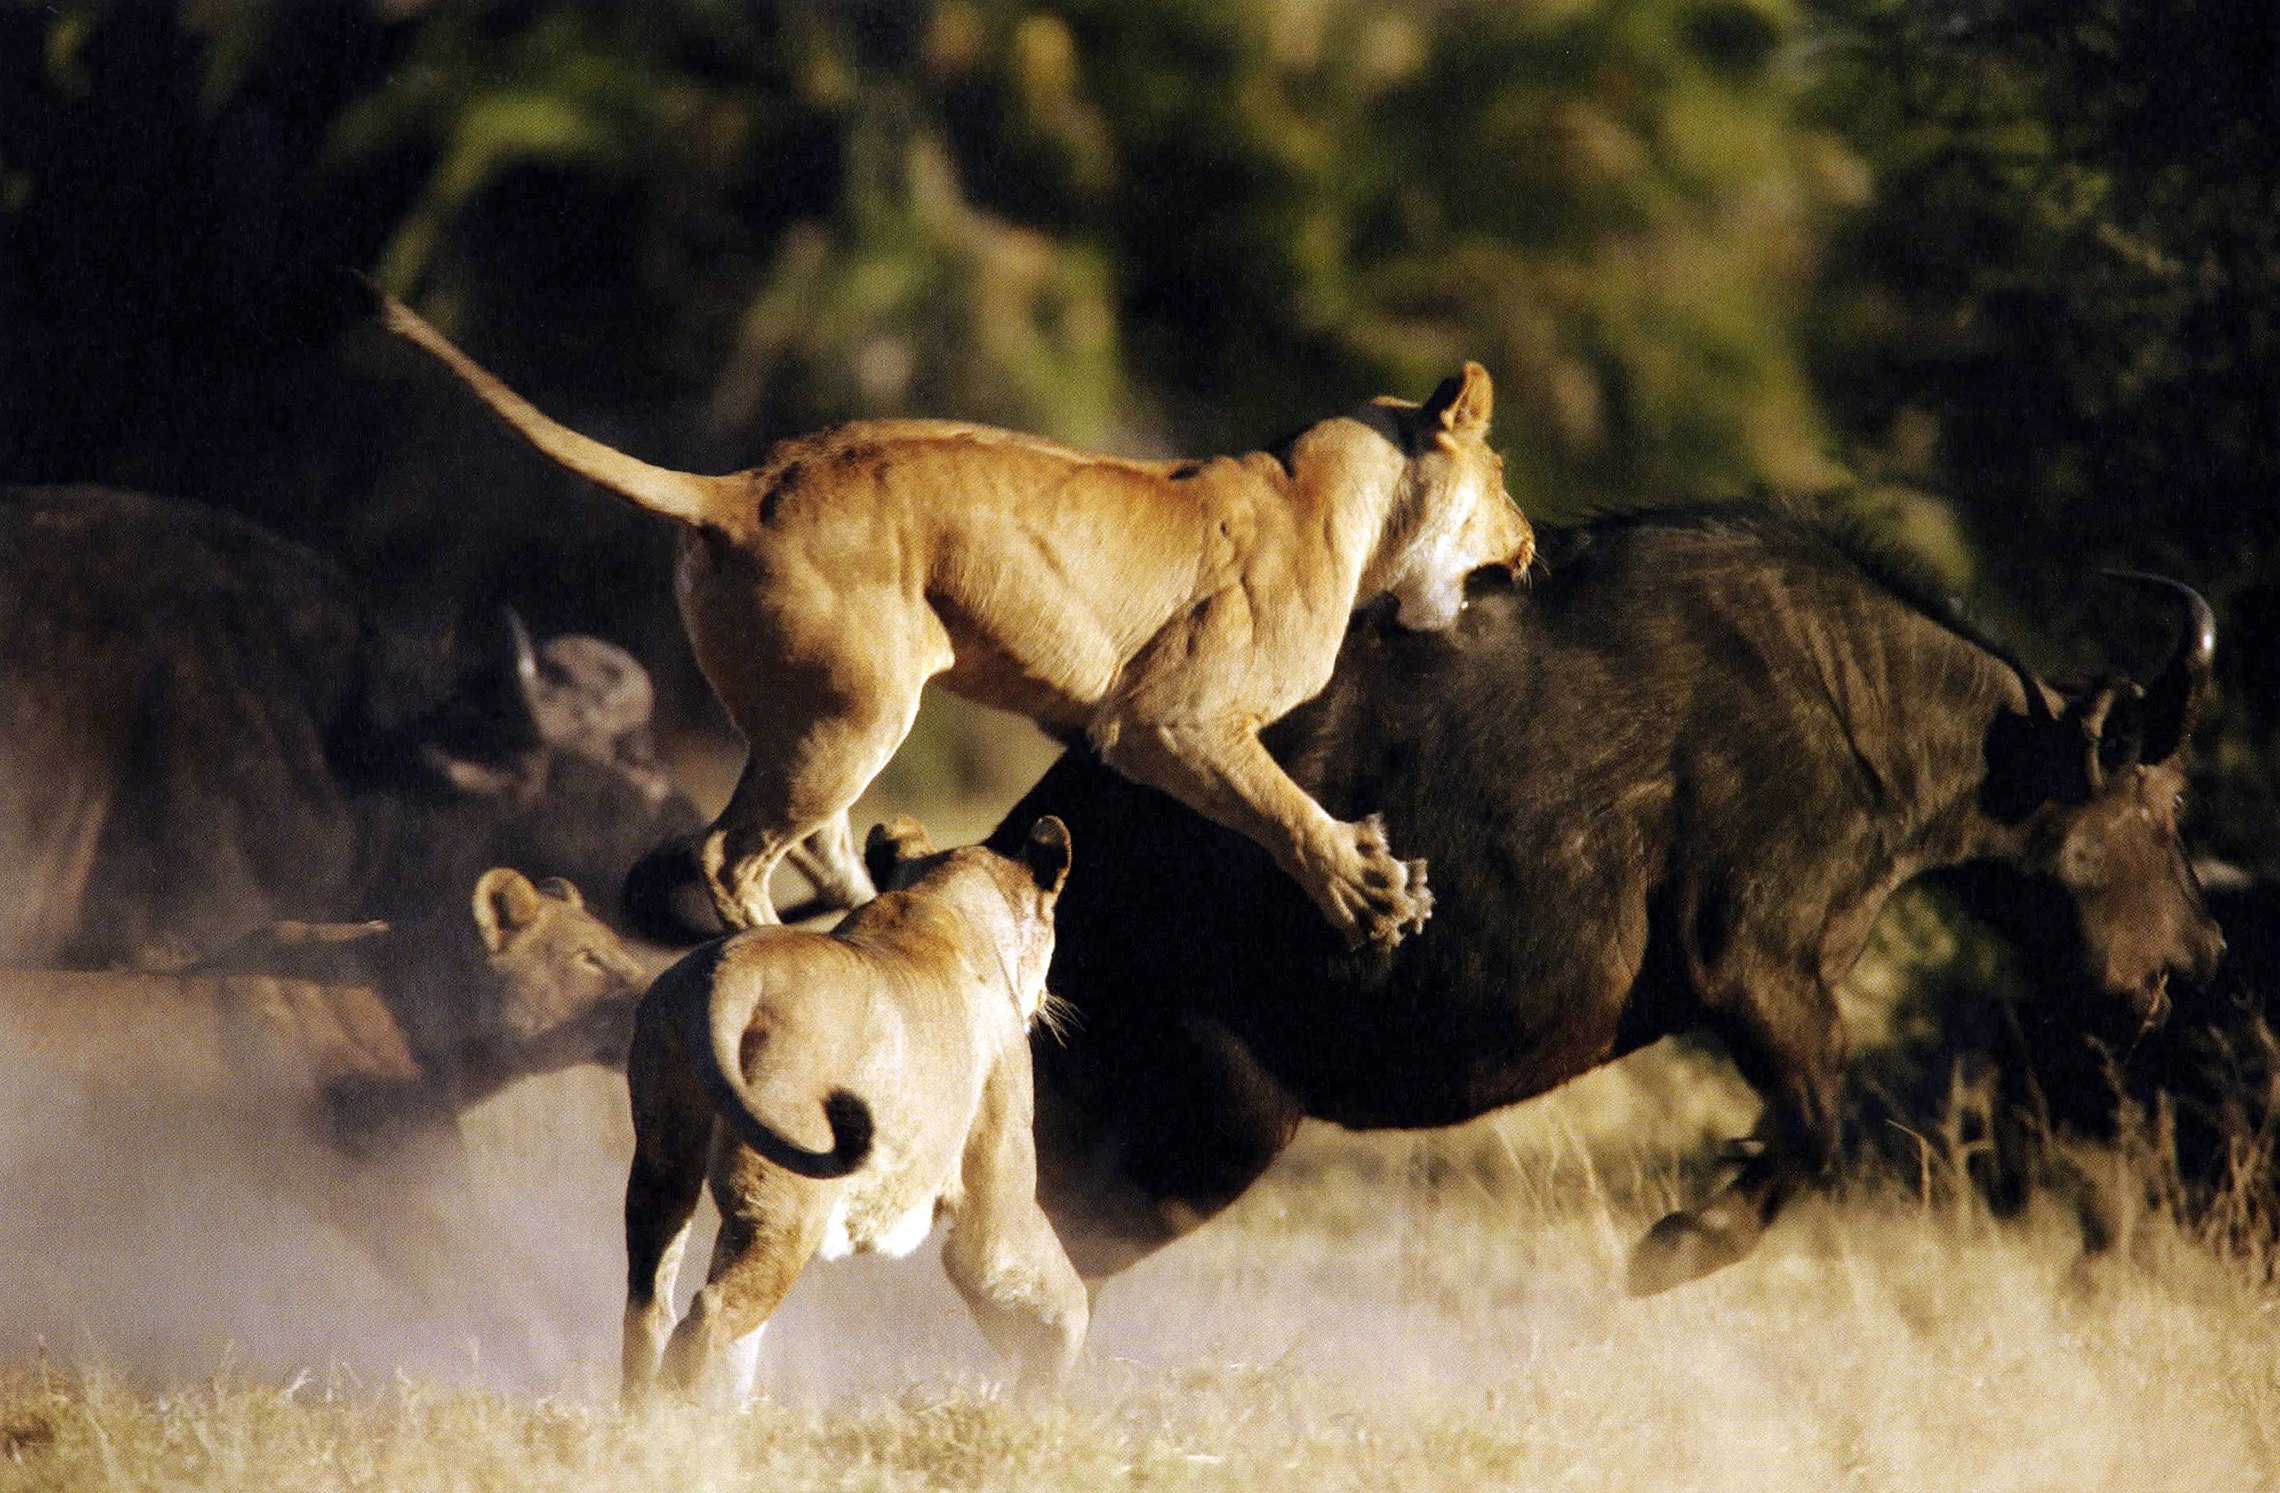 Как ведут образ жизни животные. Охота Львов в дикой природе на буйволов. Львиный Прайд в дикой природе. Прайд Львов против буйвола. Прайд Львов охота на буйволов.